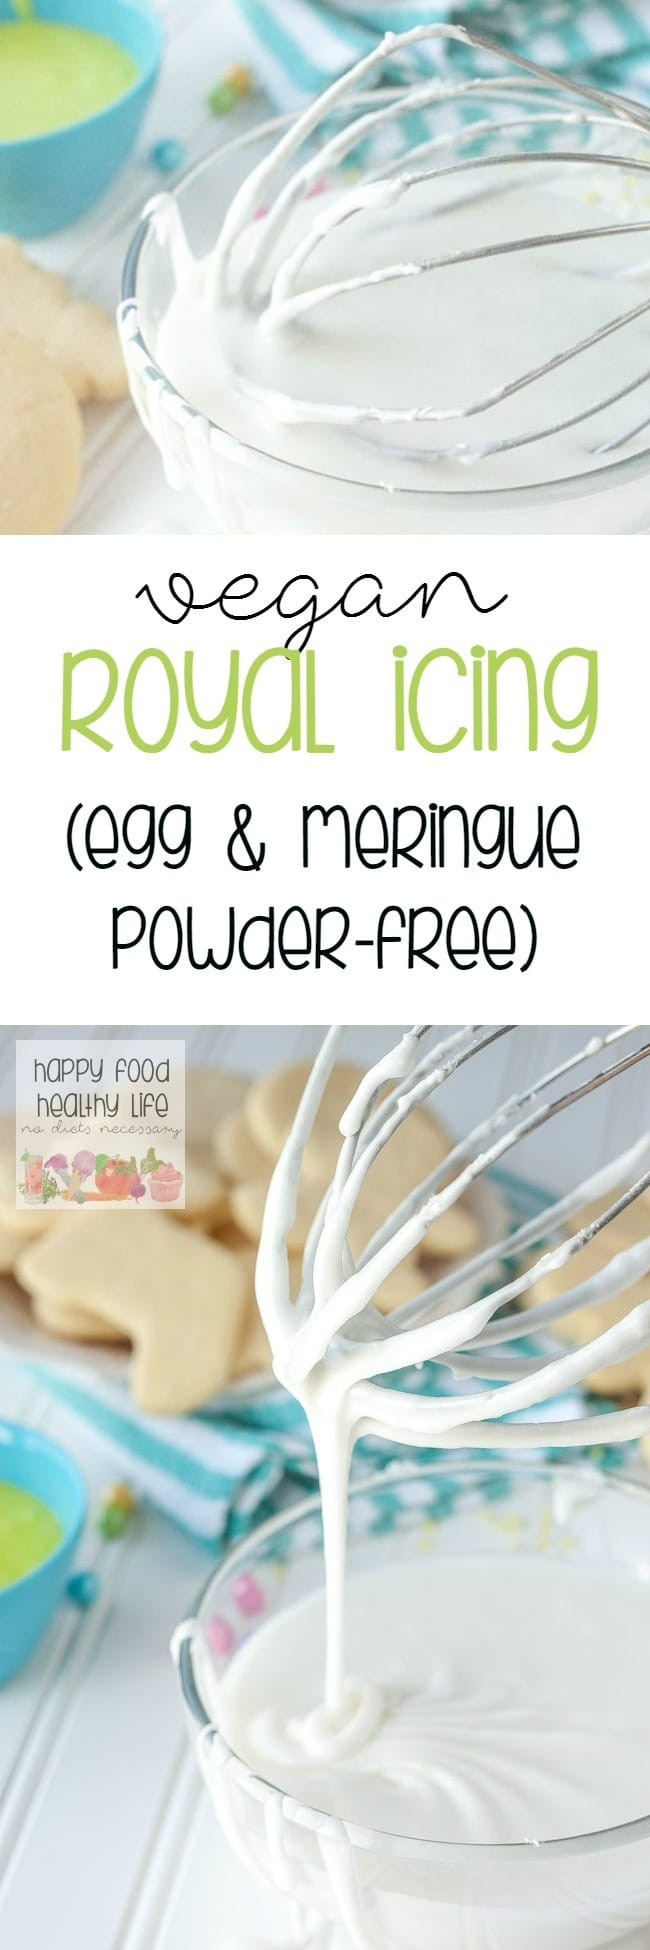 Vegan Icing Recipes
 Egg Free Vegan Royal Icing